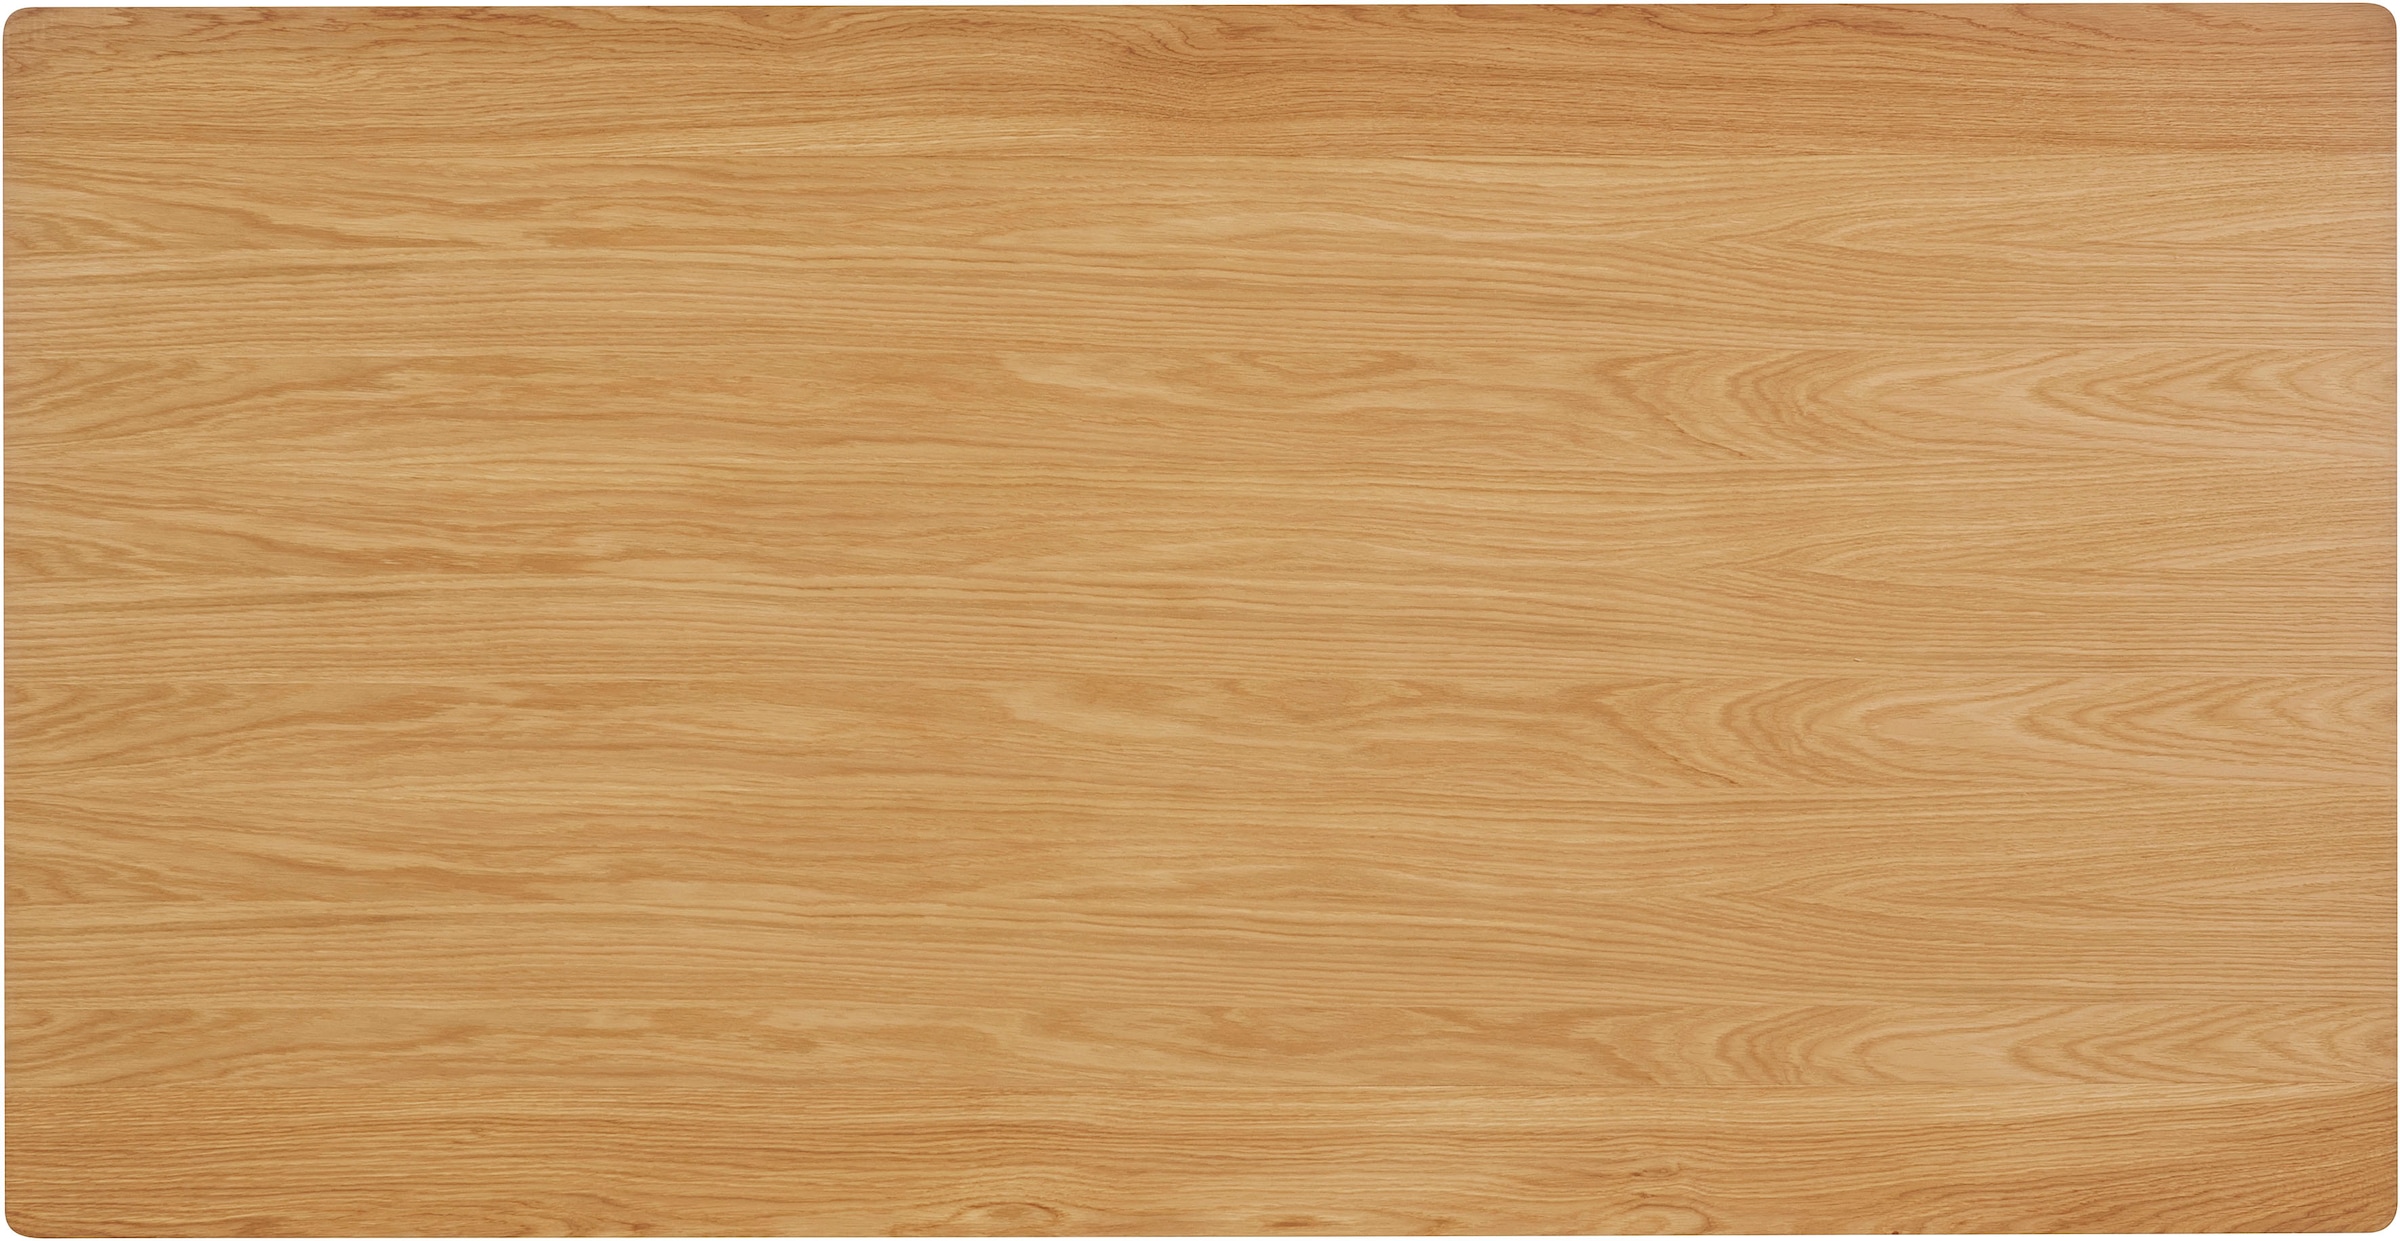 OTTO products Esstisch »Flemming«, Massivholz Eiche, 175 cm oder 225 cm, elegant gewölbte Tischplatte